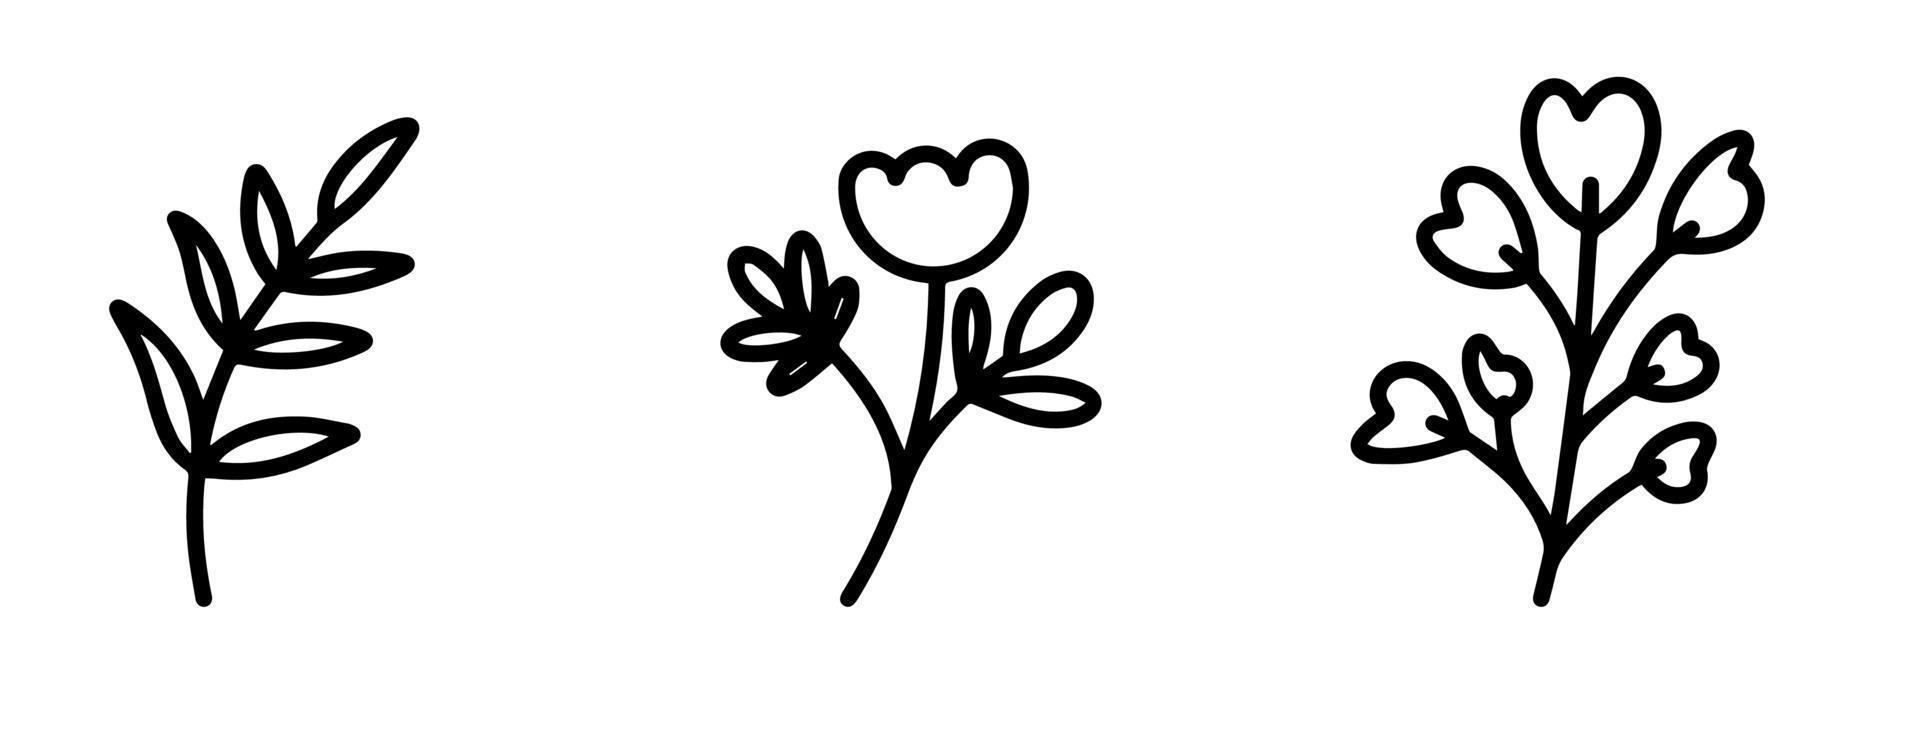 coleção de elementos botânicos para o design de cartões postais, convites, criação de logotipos ou banners. flores de vetor preto e branco, bagas, galhos e folhas para design. estilo doodle simples e plano.